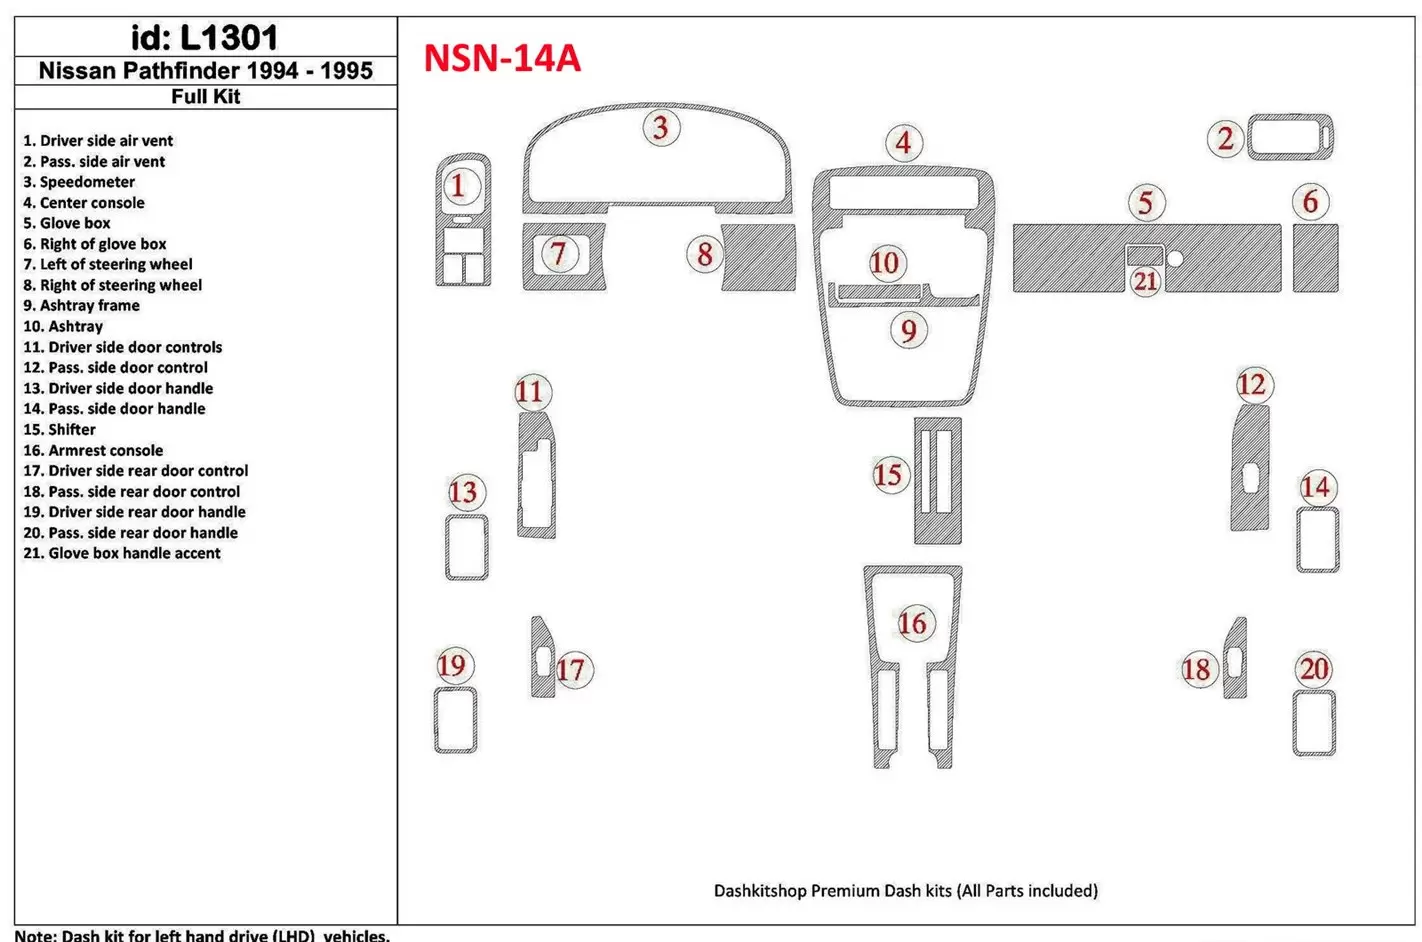 Nissan Pathfinder 1994-1995 Ensemble Complet, 21 Parts set BD Kit la décoration du tableau de bord - 1 - habillage decor de tabl